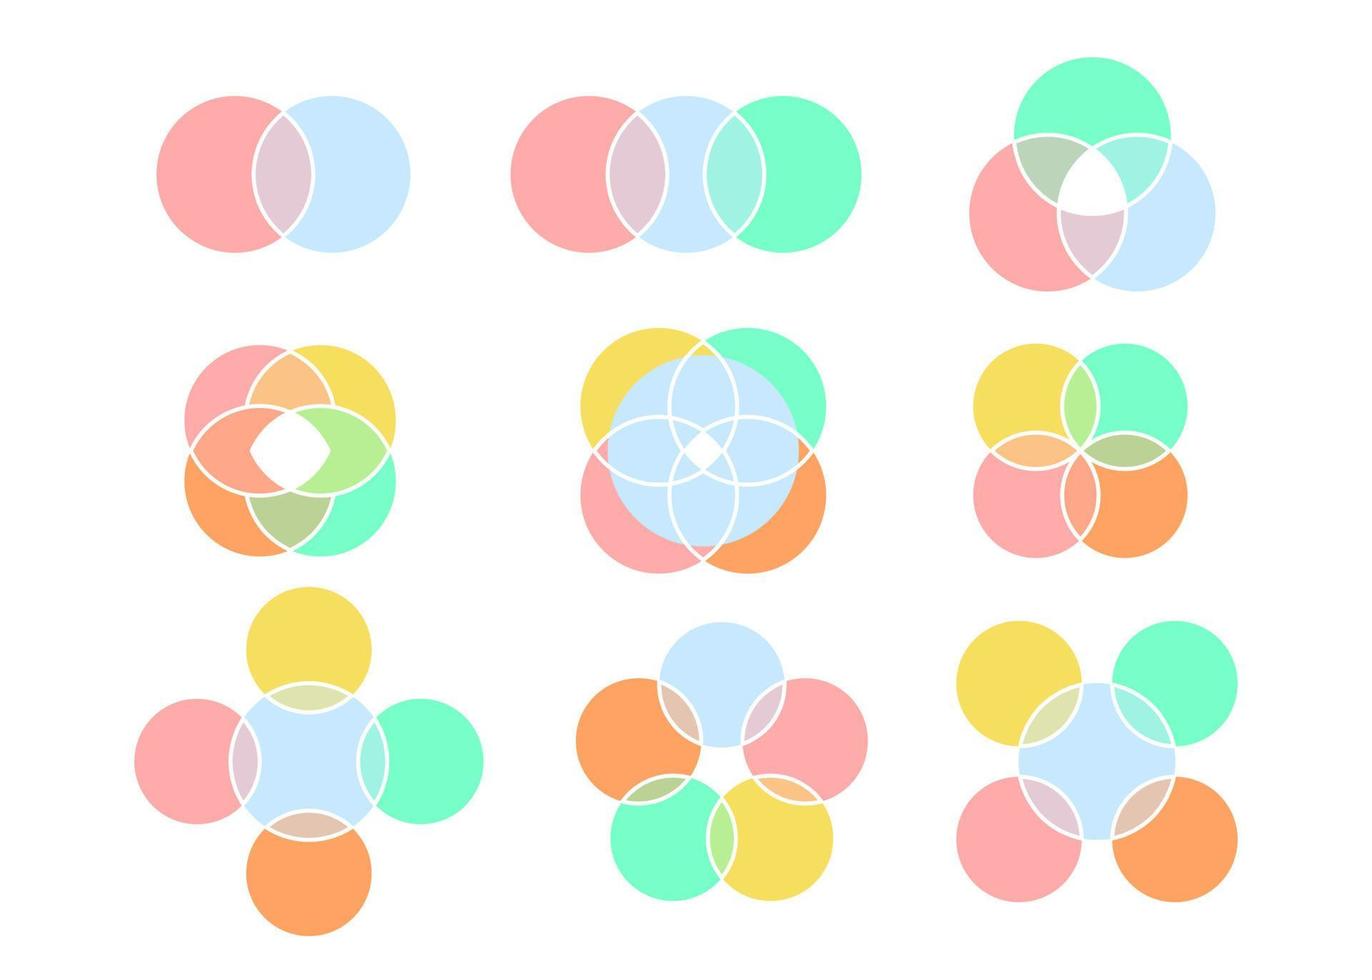 soorten kleur venn diagram, grafiek cirkel snijpunt. manier om informatie weer te geven in de vorm van kruisende cirkels. wiskundige infographic. 2, 3, 4, 5 en 6 kruispunten. vector illustratie